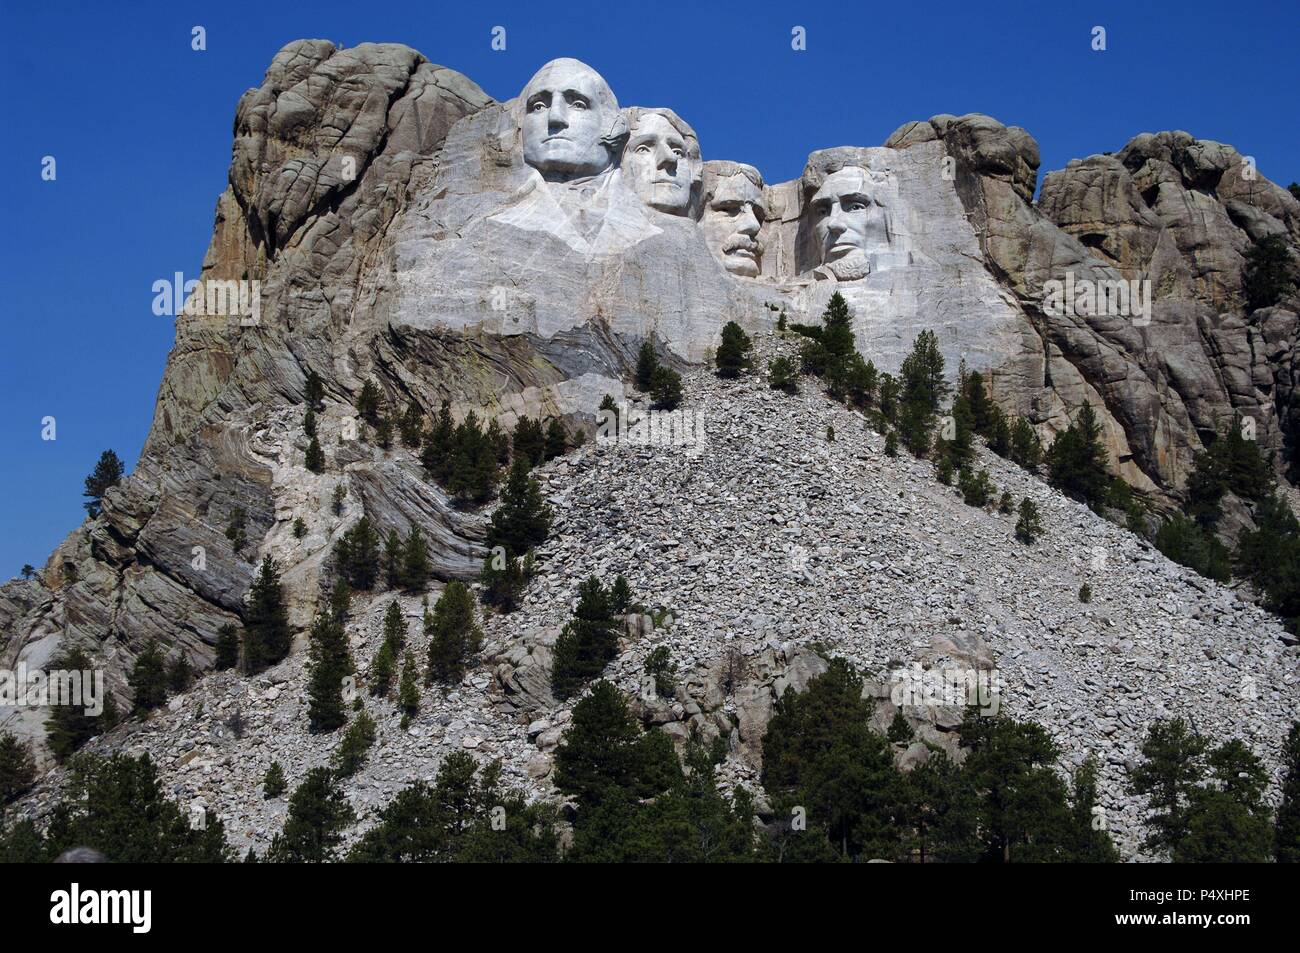 Stati Uniti. Mount Rushmore National Memorial. I capi degli Stati Uniti i  presidenti scolpiti sul Monte Rushmore. Da sinistra a destra, George  Washington Thomas Jefferson, Theodore Roosevelt e Abramo Lincoln.  1927-1941. Dalla